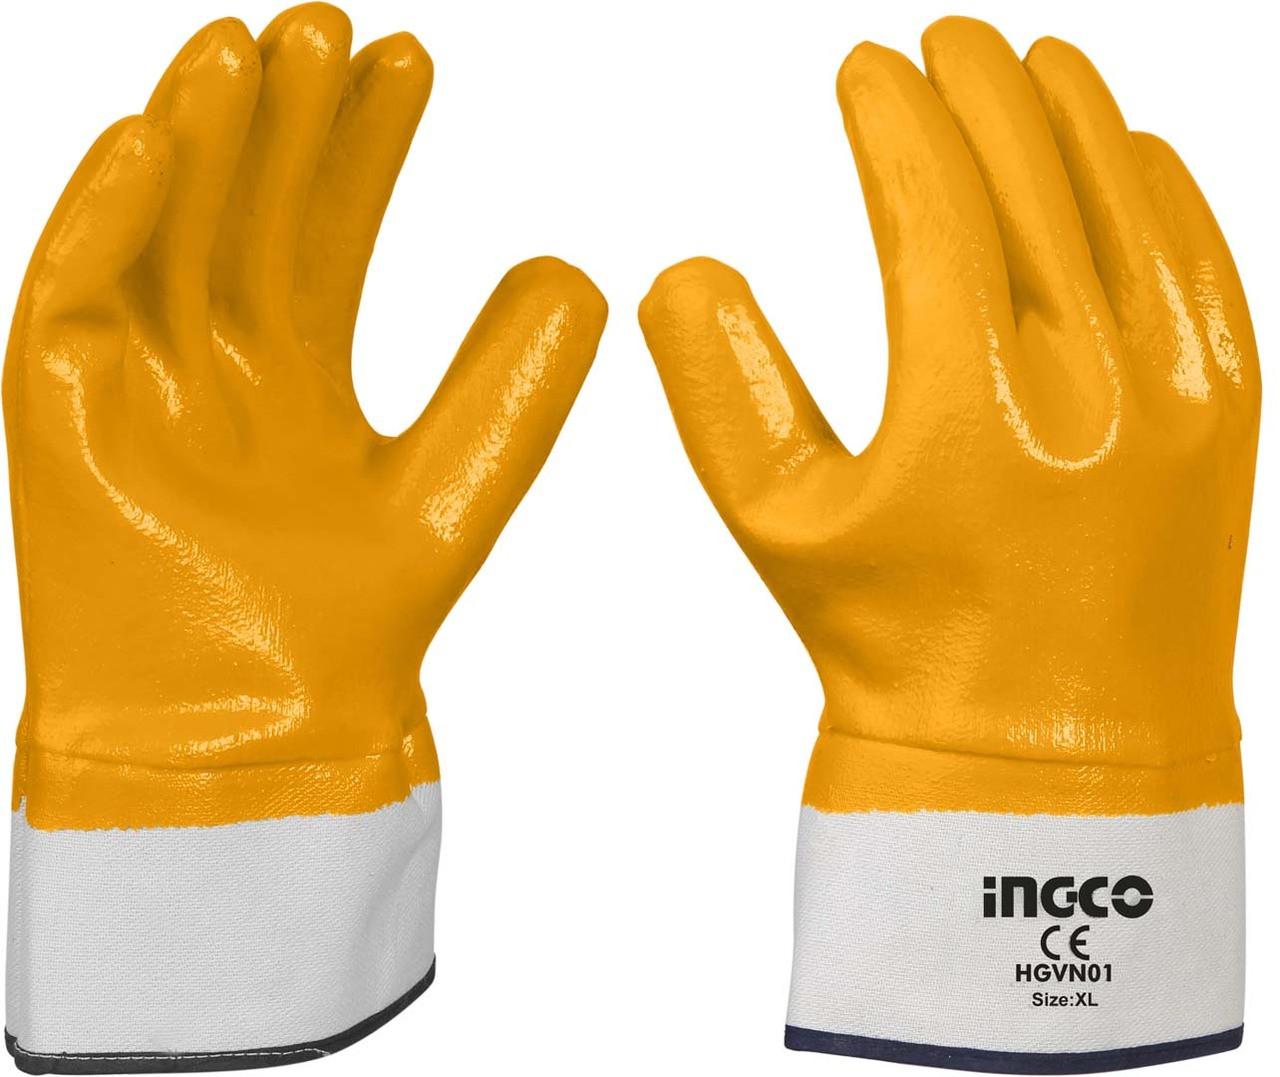 INGCO HGVN01 Nitrile rukavice, Narandžaste